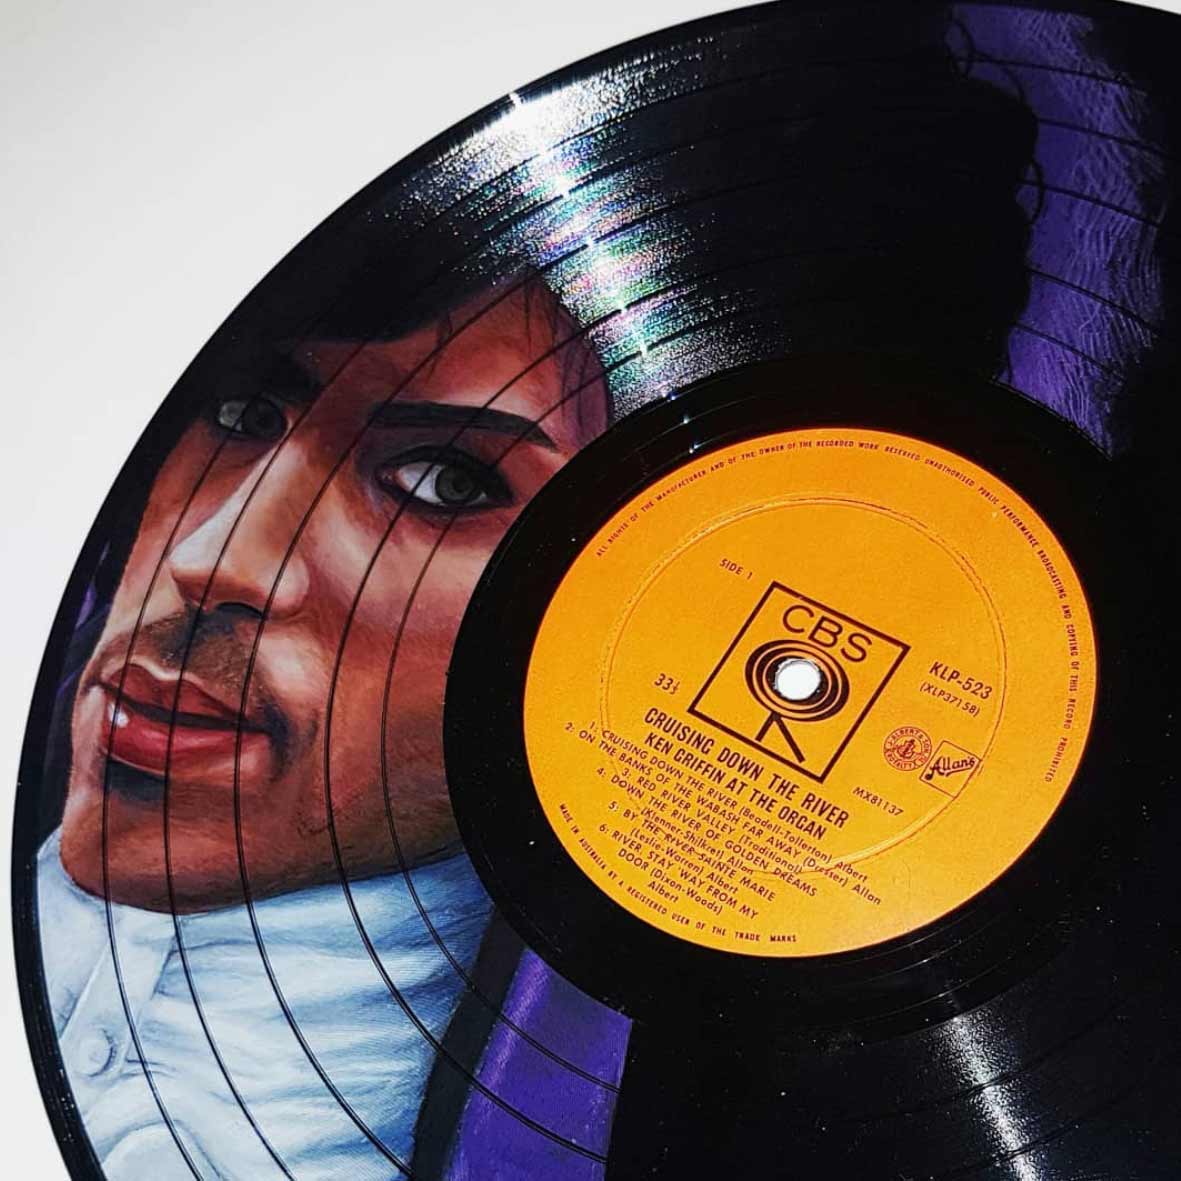 Auf Vinyl-Platten gemalte Musiker-Portraits melissa-Janes-vinyl-portraits_02 